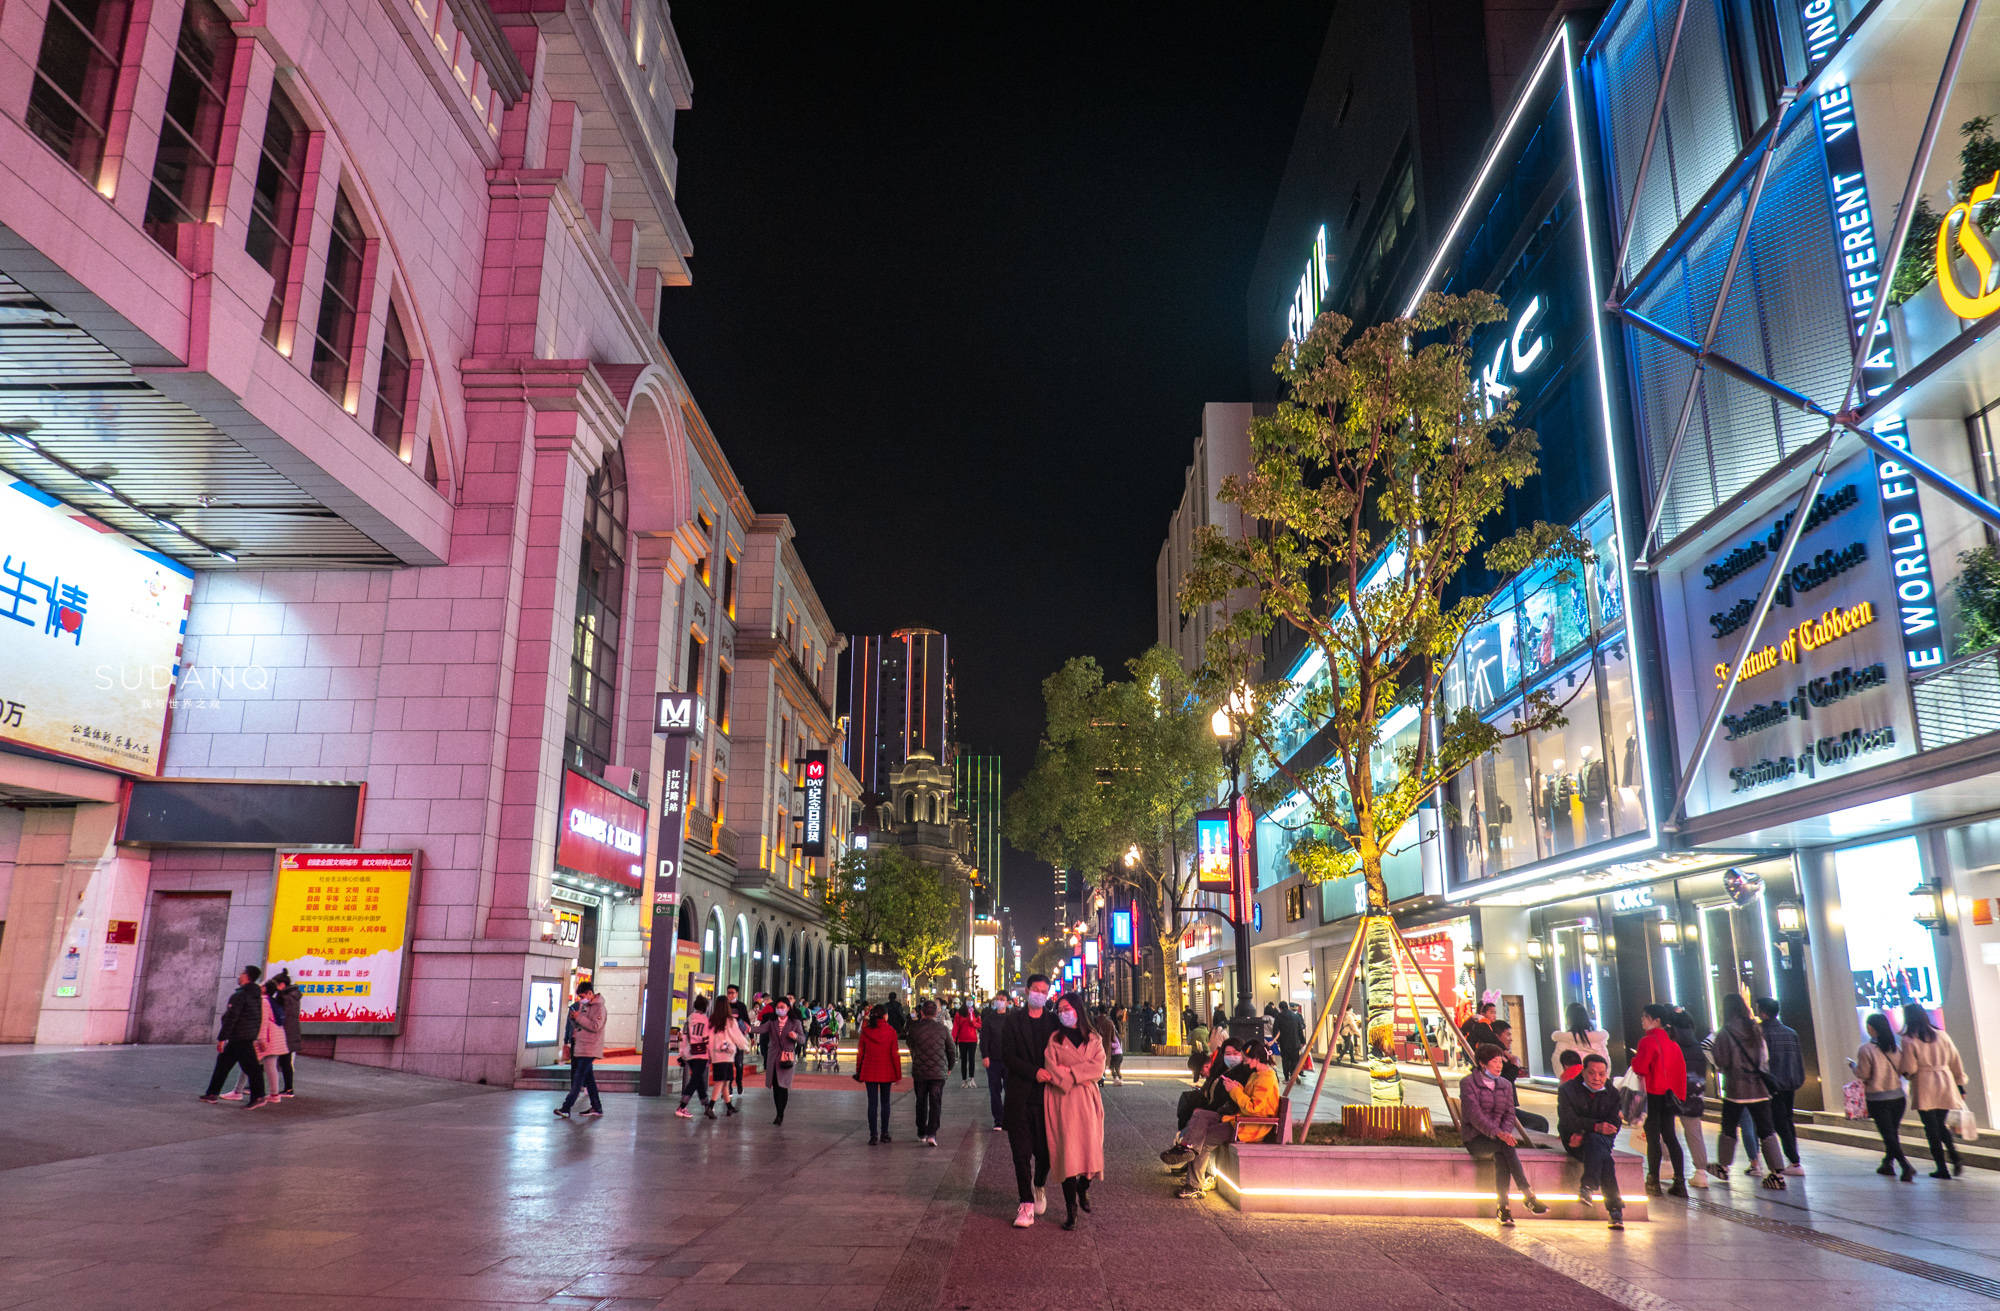 2022三福百货(骡马市步行街店)购物,周边游玩：骡马市商业步行街...【去哪儿攻略】